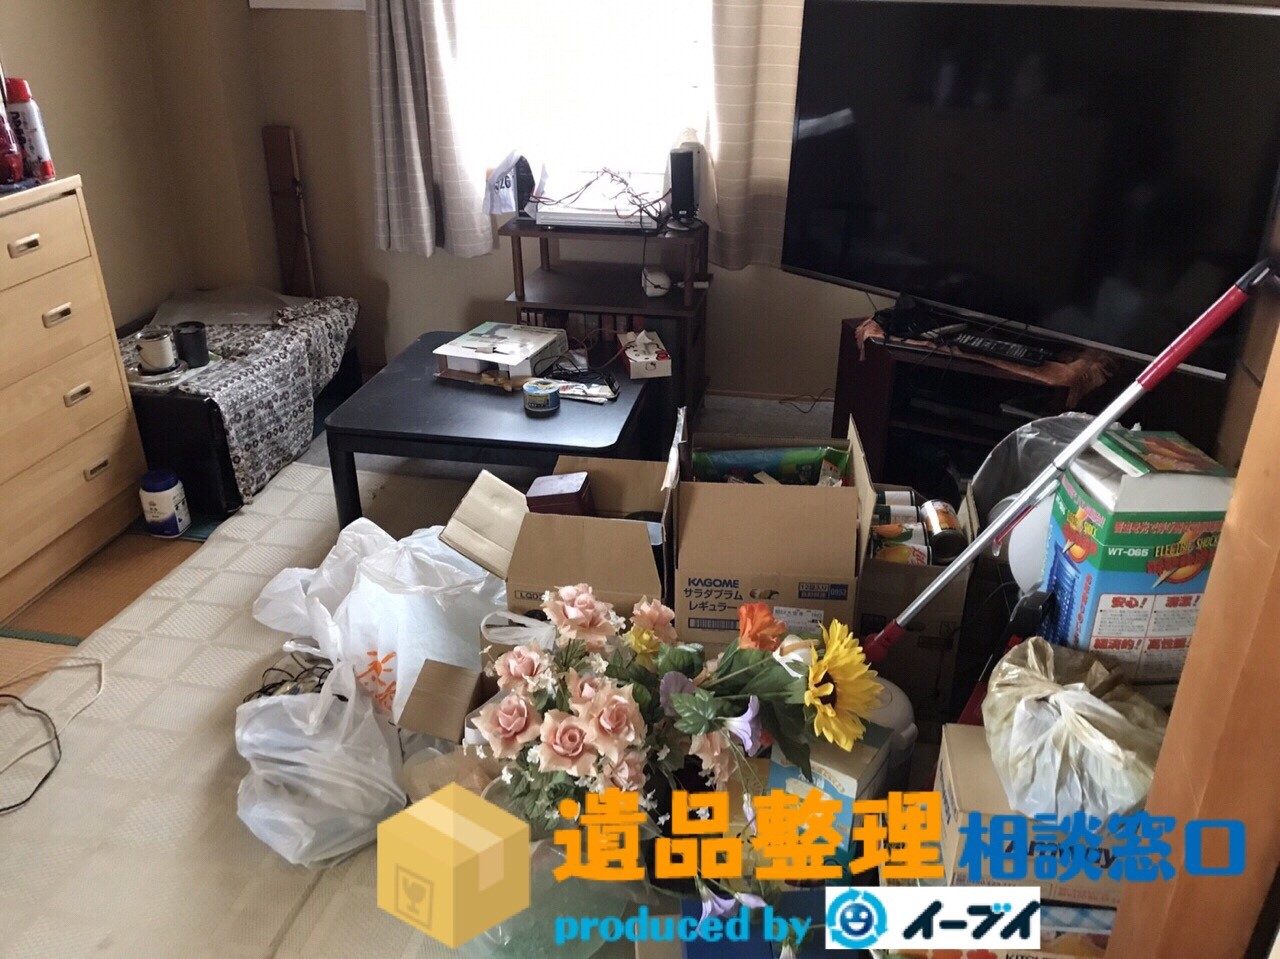 奈良県大和郡山市で遺品整理に伴う部屋の片付けや処分をしました。のアイキャッチ